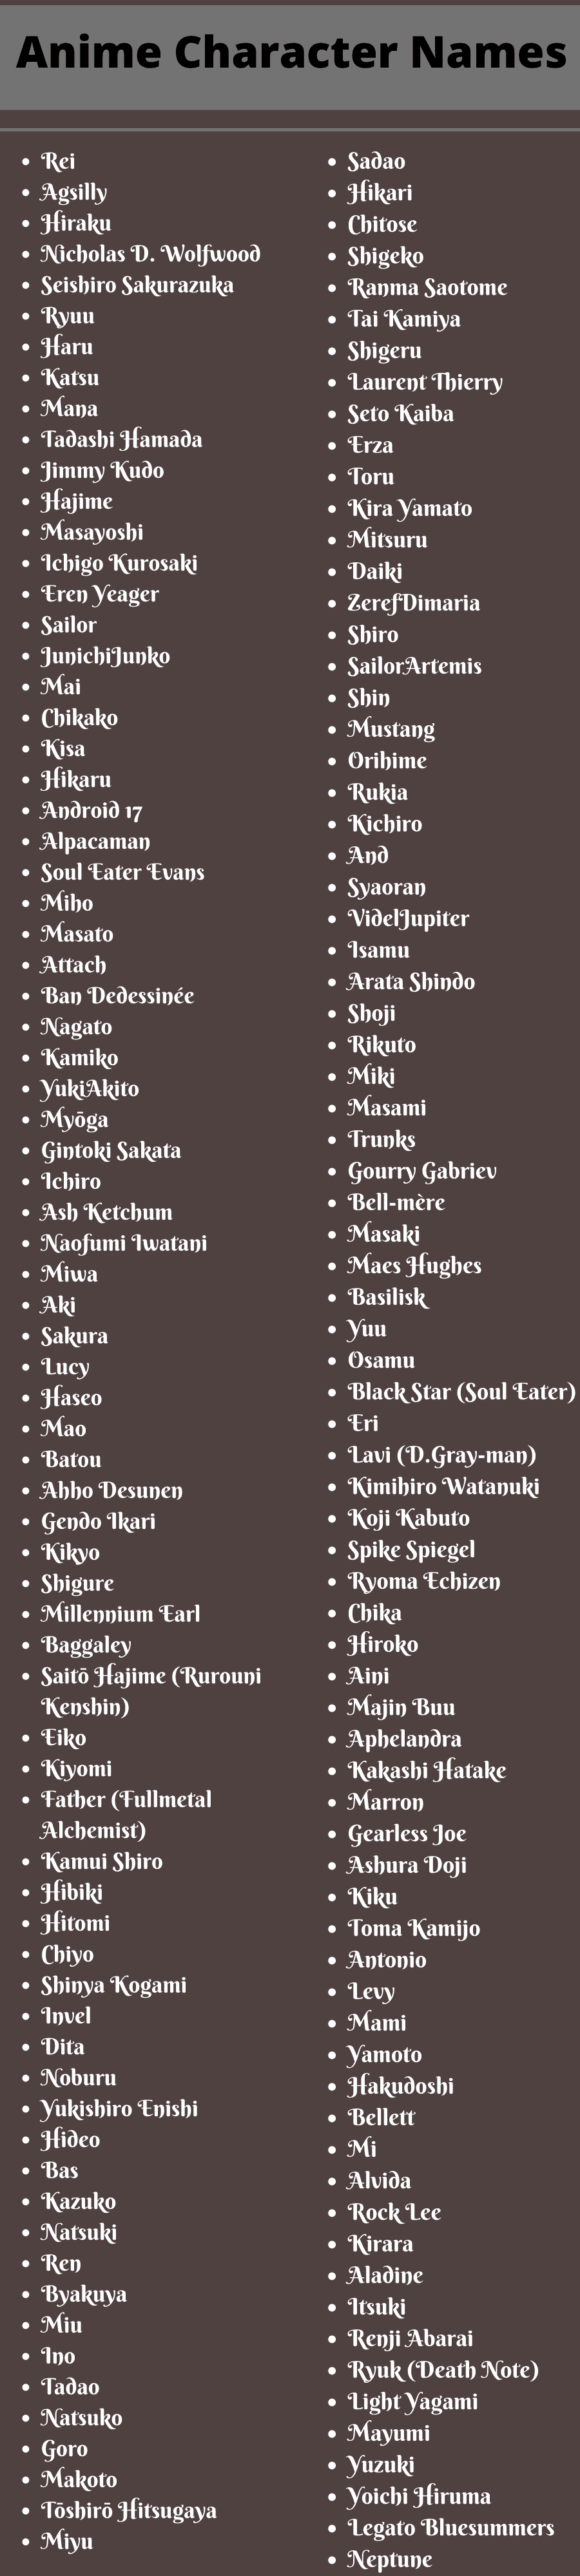 Anime Character Names